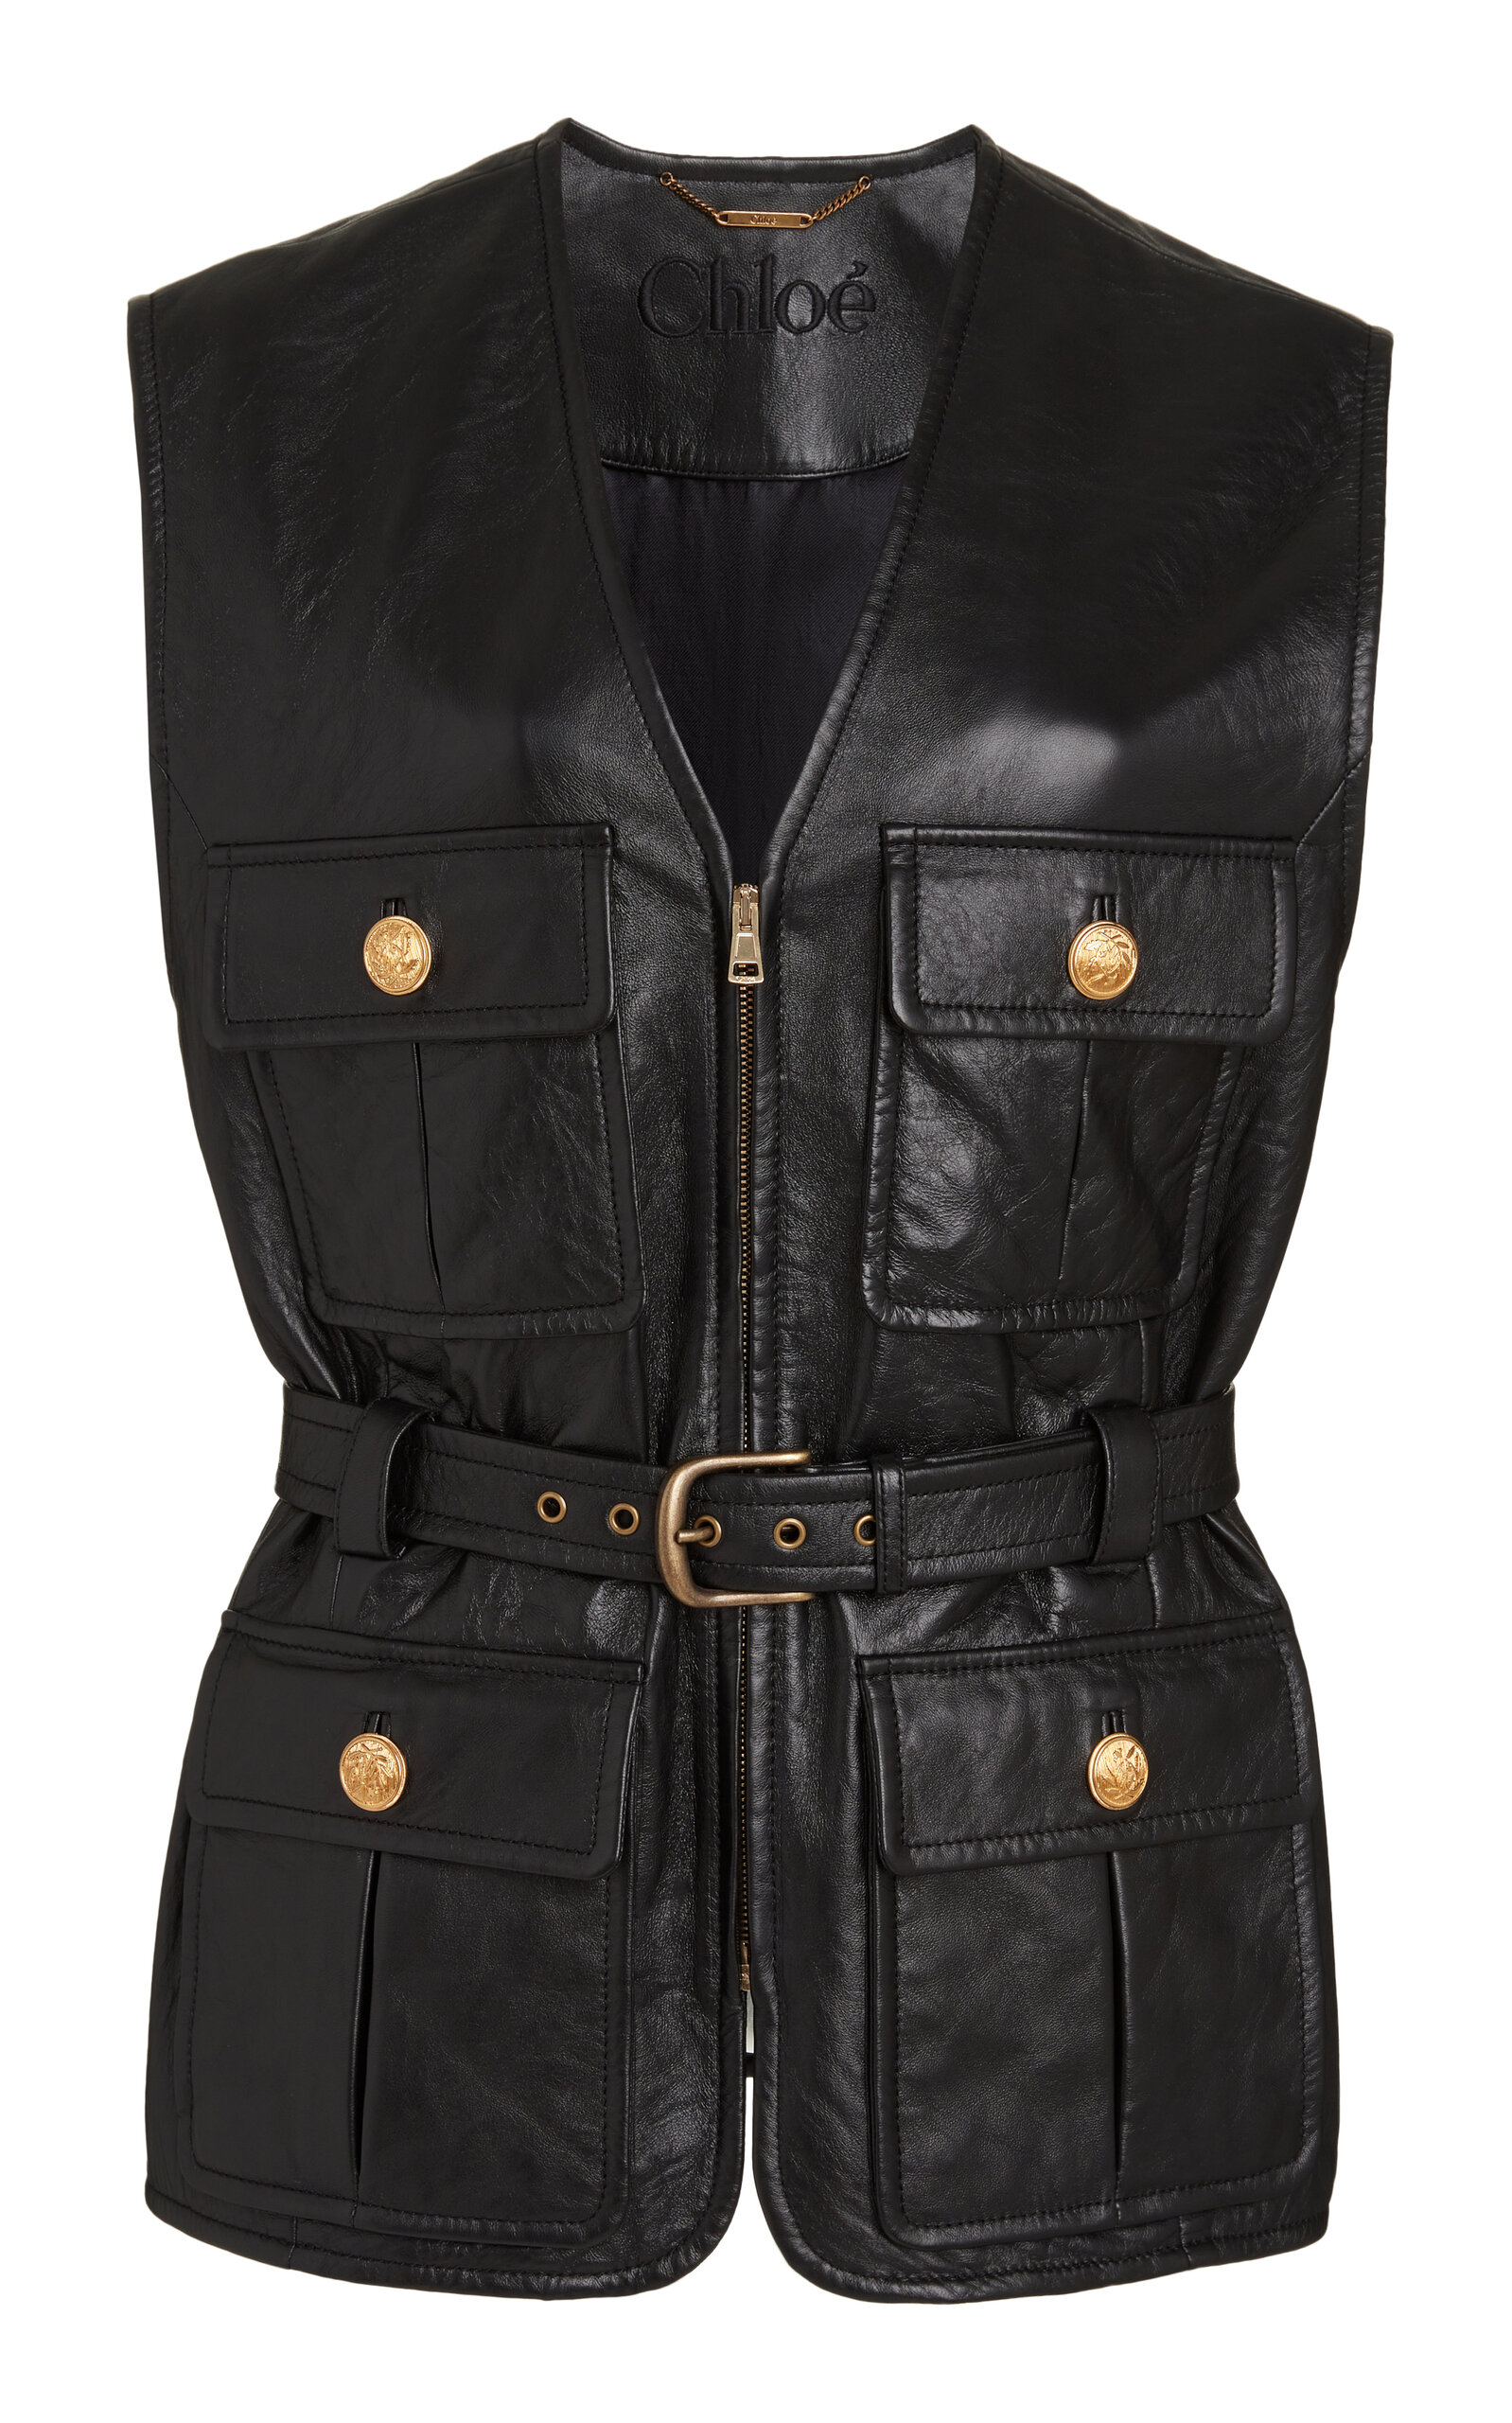 Chloé Zipped Leather Vest